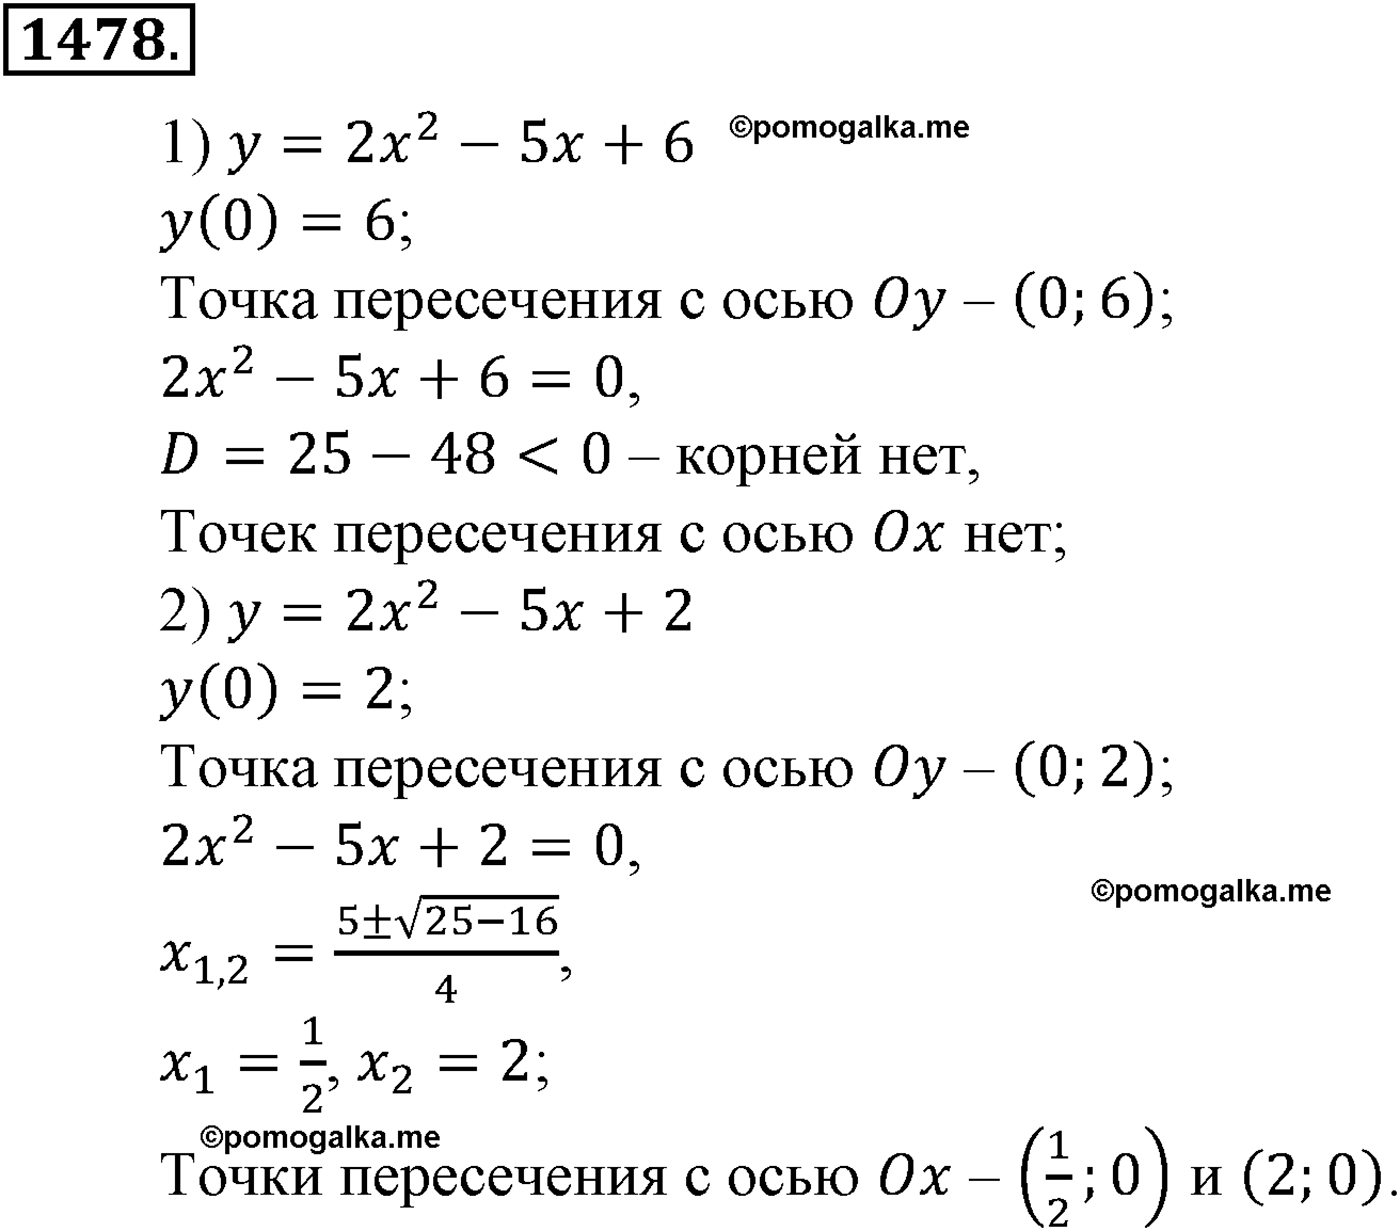 разбор задачи №1478 по алгебре за 10-11 класс из учебника Алимова, Колягина